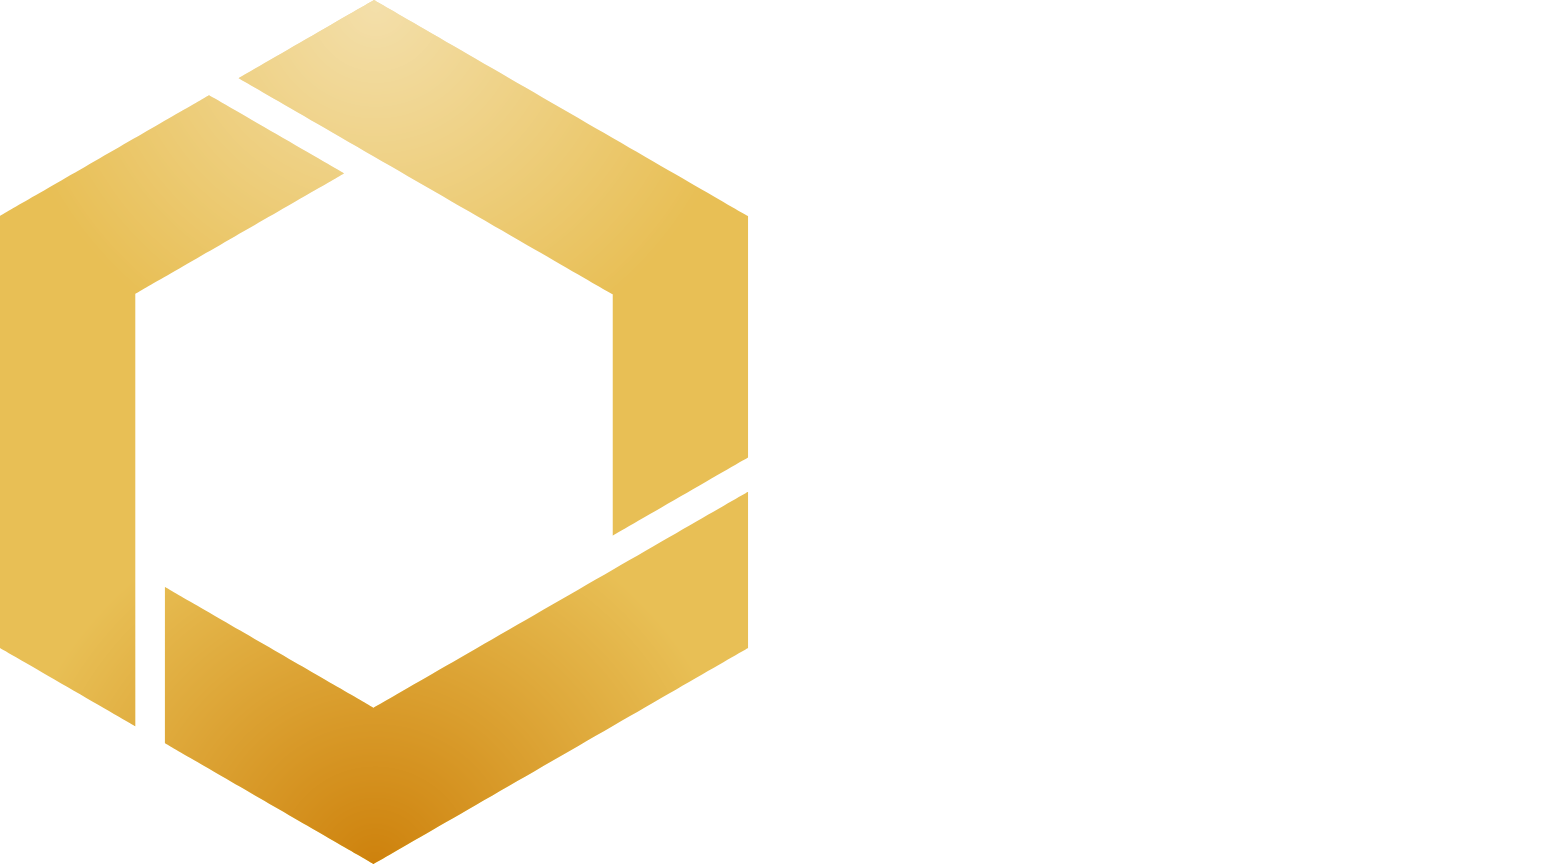 Orosur Mining Logo groß für dunkle Hintergründe (transparentes PNG)